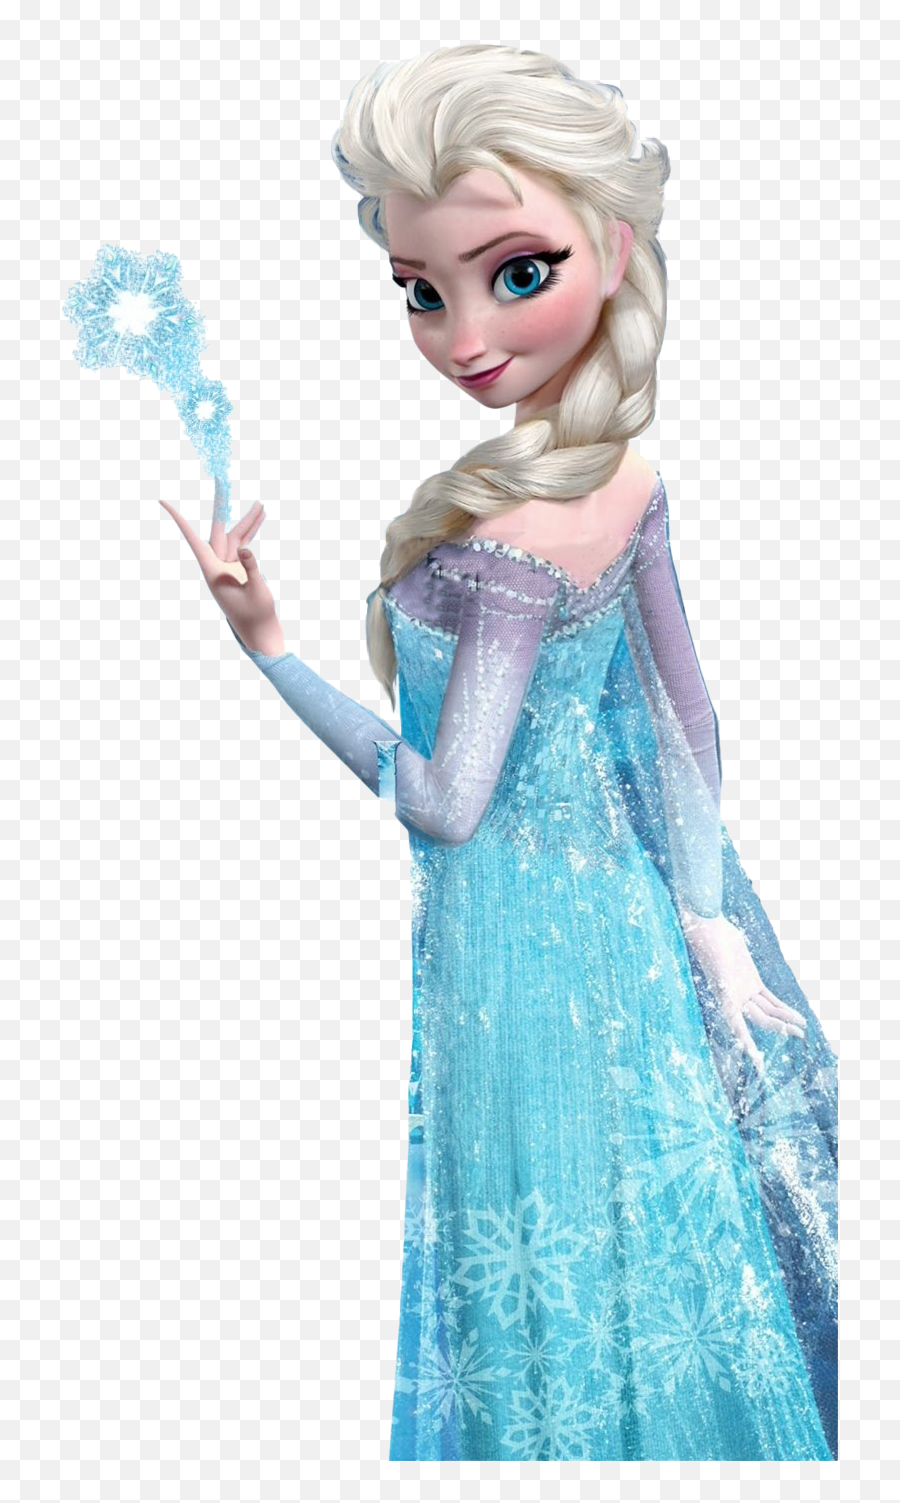 Frozen Png Images Frozen Cliparts - Princesa Elsa Frozen Png Emoji,Frozen Emojis